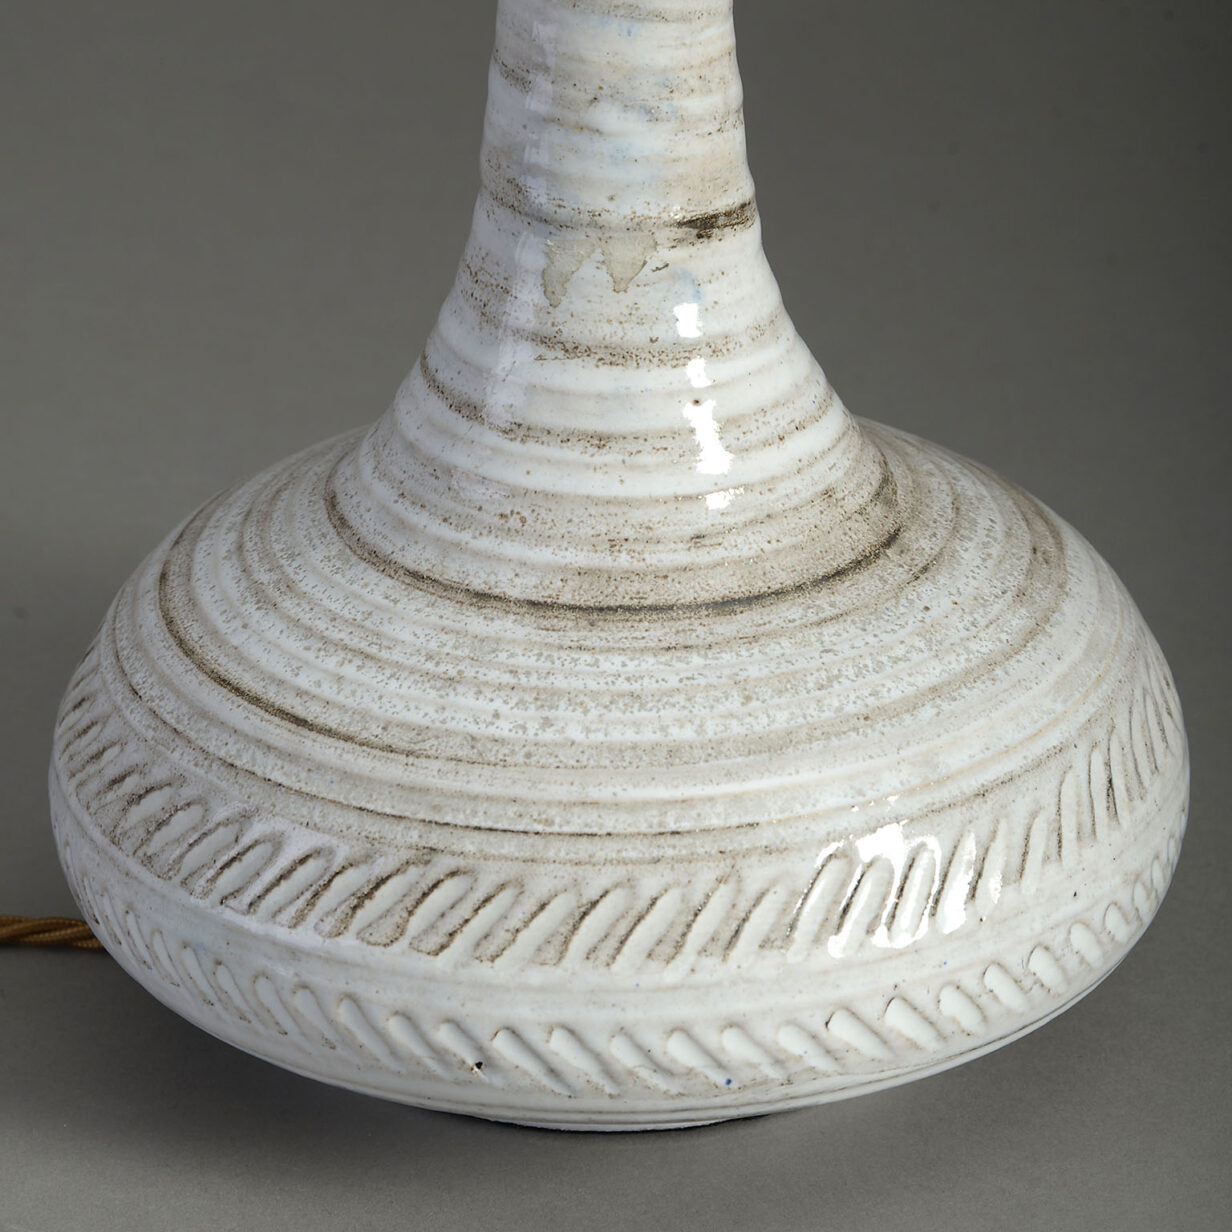 Pottery bottle vase lamp